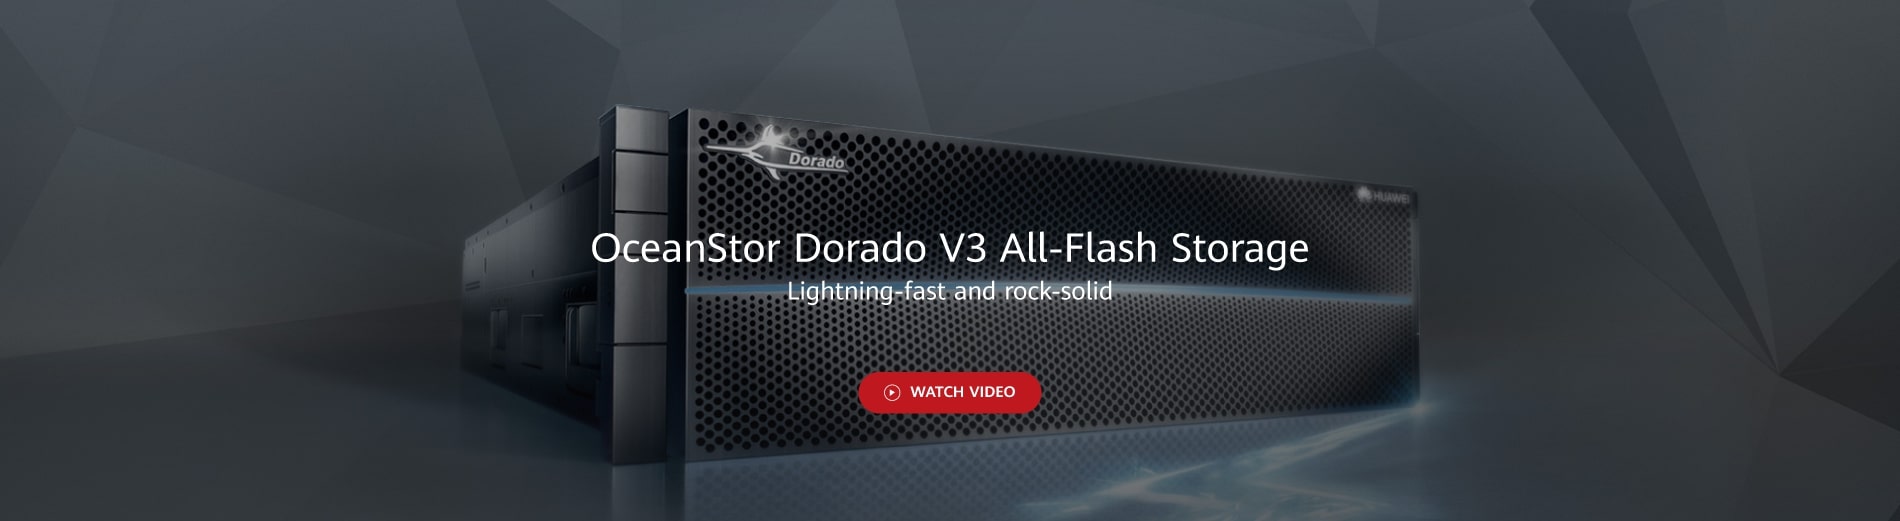 Huawei OceanStor Dorado V3 All-Flash Storage